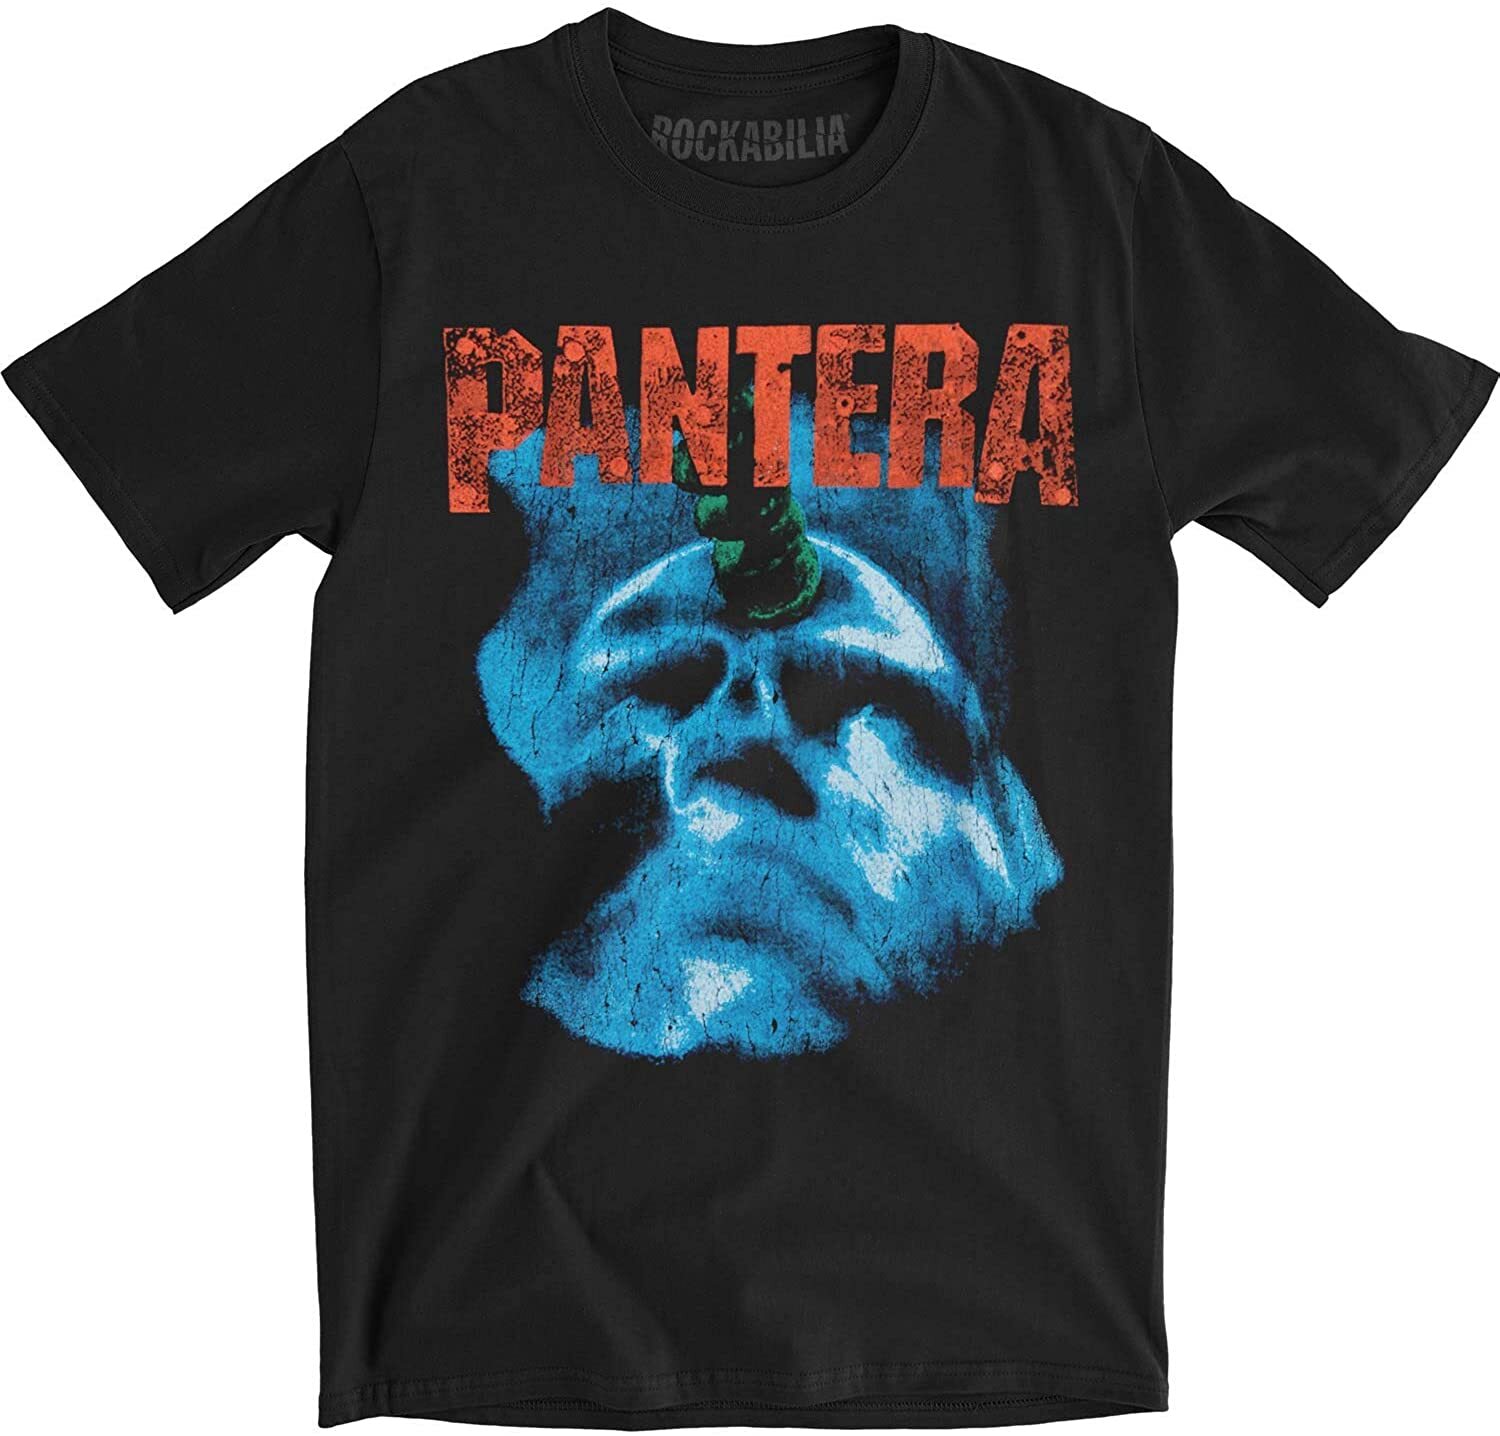 Far beyond driven. Pantera far Driven t Shirt. Pantera the great Southern Trendkill футболка. Футболка Pantera vulgar display. Pantera Tour Merch 2023.